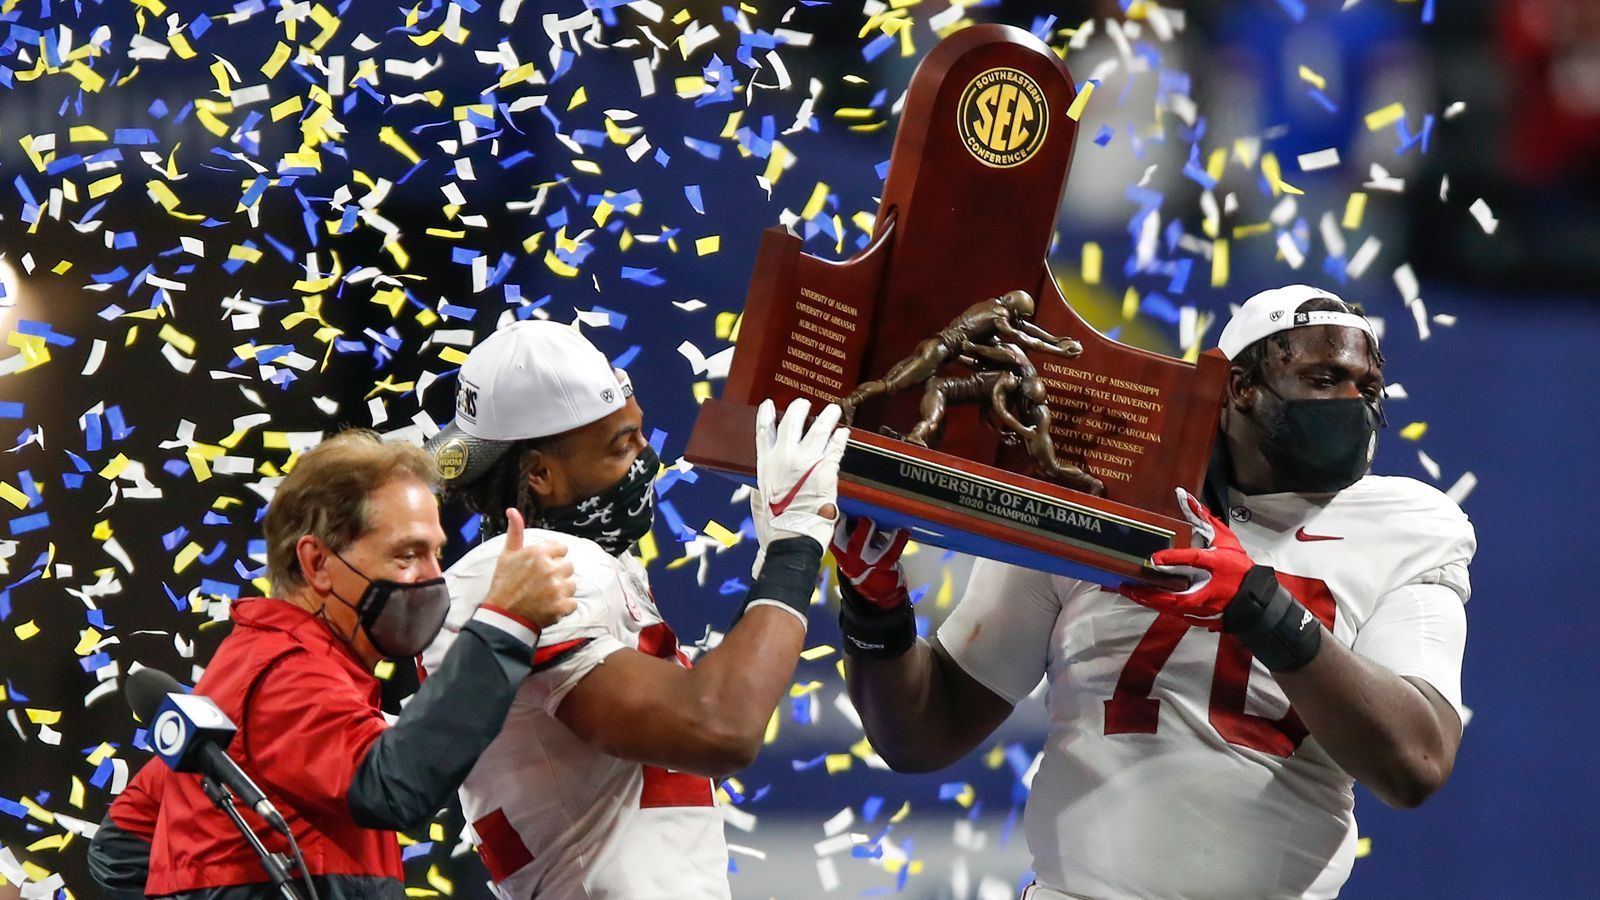 
                <strong>Erfolge</strong><br>
                Die Geschichte der Crimson Tide ist eine glorreiche. Sie haben starke 17 nationale Titel gewonnen und stellen mit unglaublichen 72 Bowl Games die höchste Anzahl aller Teams im College Football. Und das ist nur einer von zahlreichen Rekorden, die das Football-Programm aus Alabama hält.
              